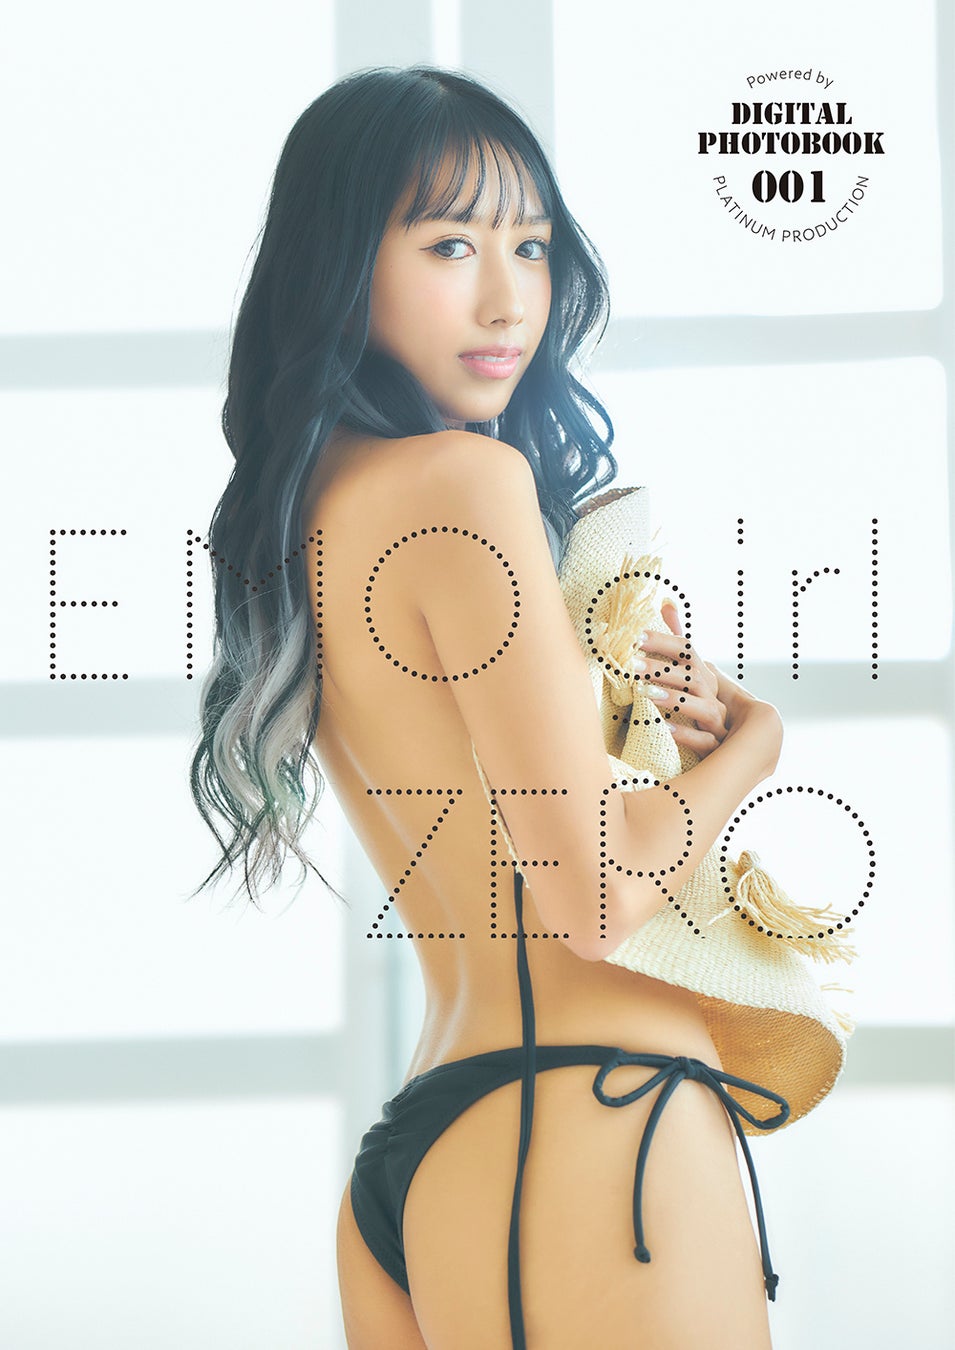 デジタル写真集「EMO girl ZERO Digital PHOTOBOOK 001 Powered by PLATINUM PRODUCTION」の表紙発表！